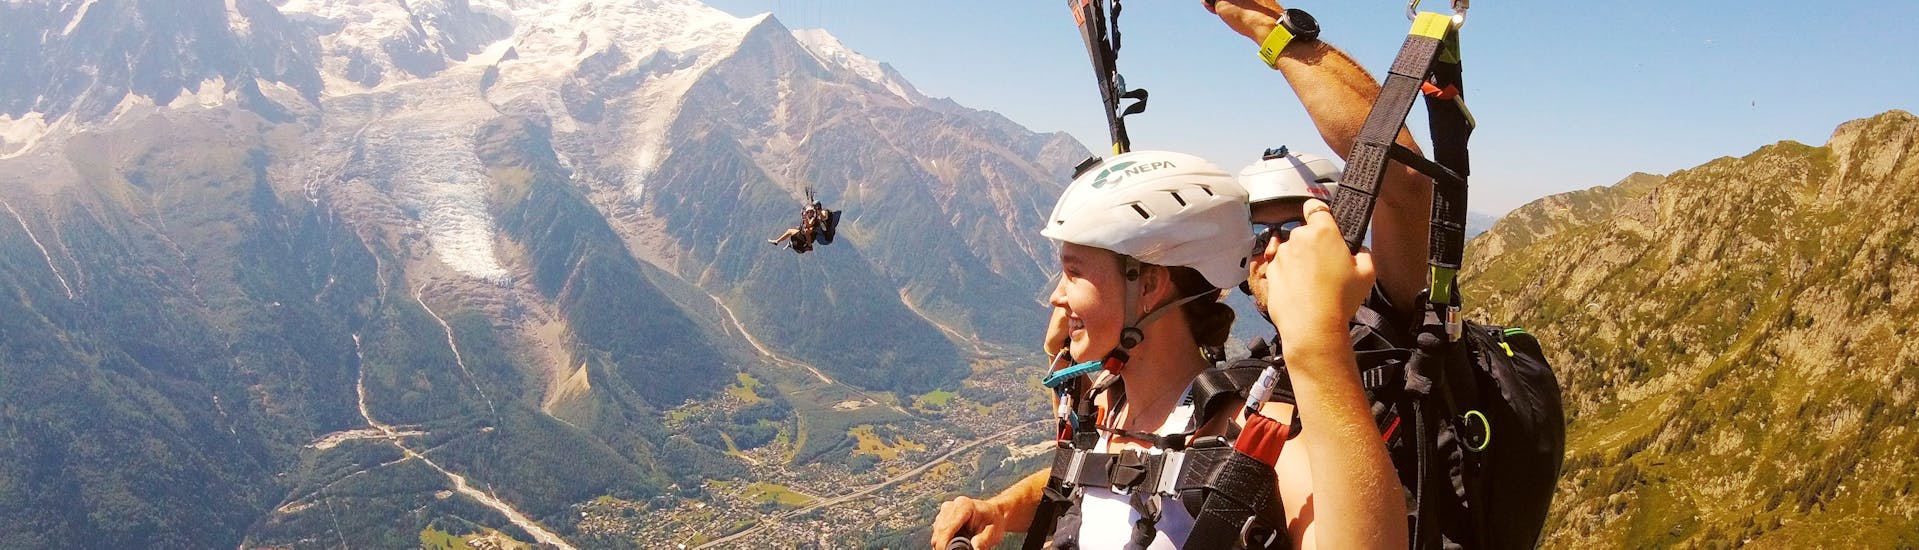 Parapente biplaza panorámico en Chamonix (a partir de 12 años) - Mont Blanc.